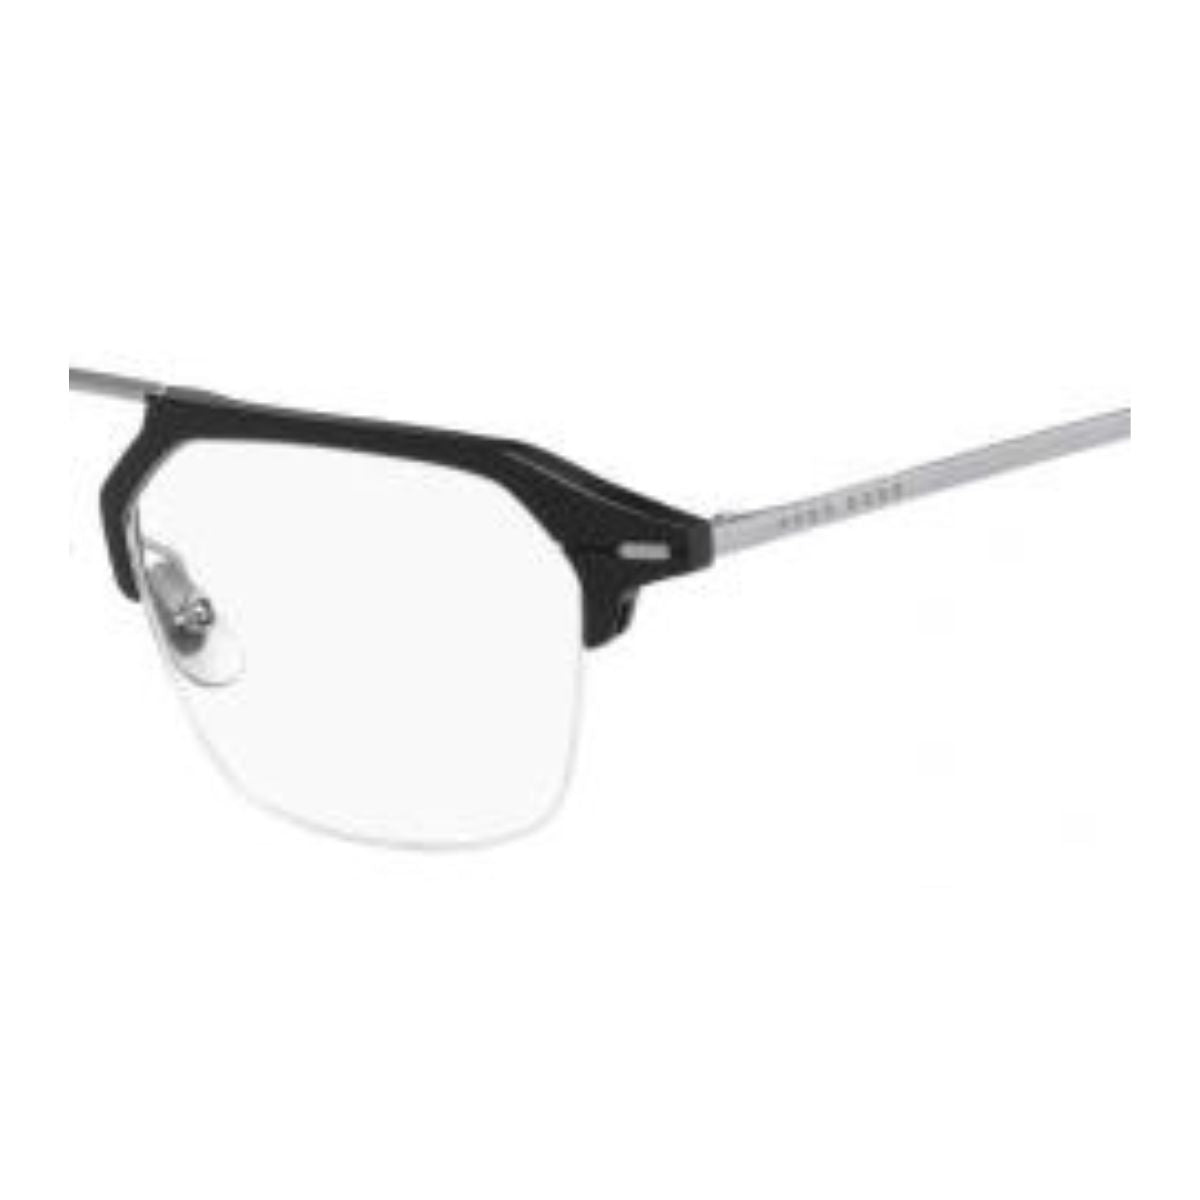 "shop Boss 1136 003 eyeglasses & power glasses frame for men's at optorium"